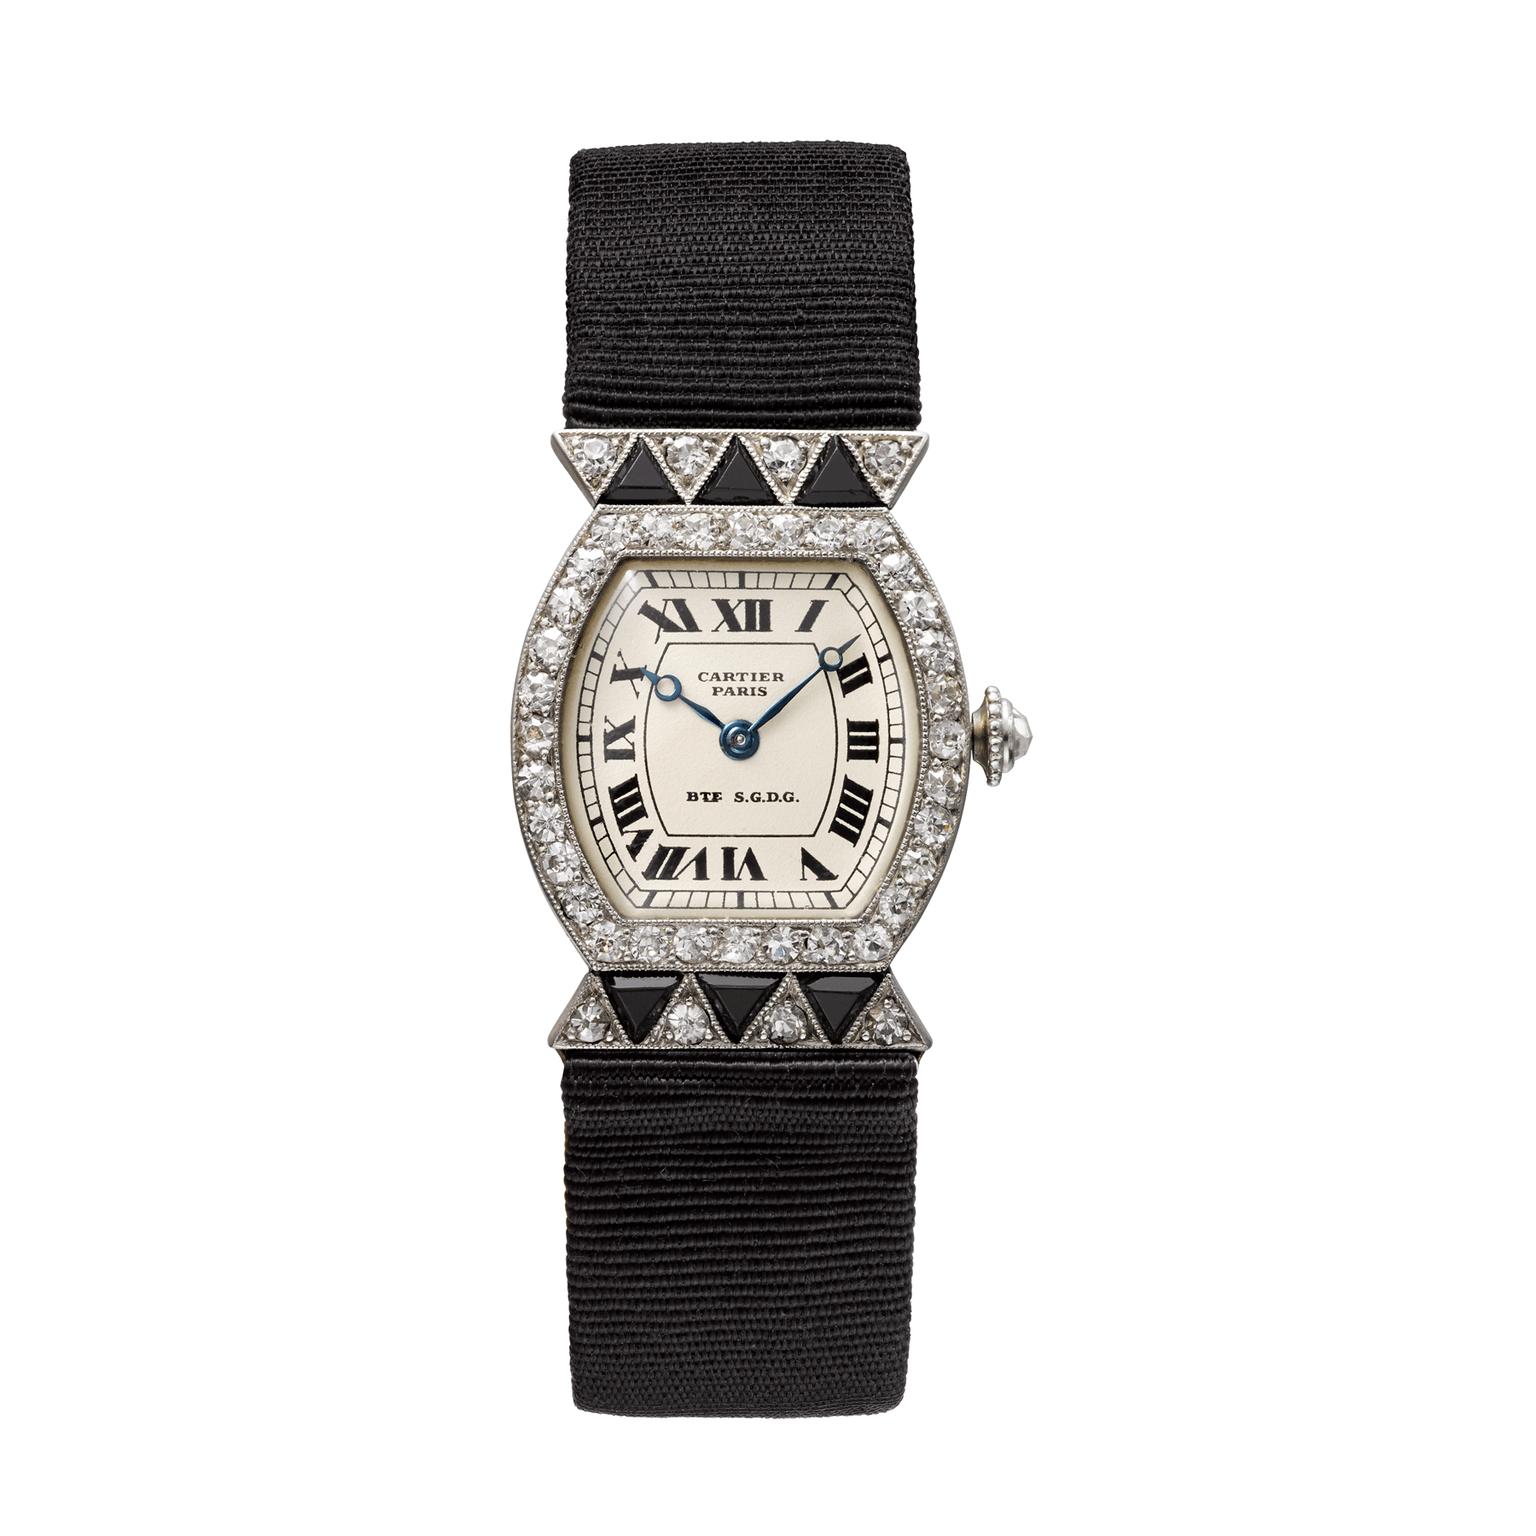 Cartier Tortue wristwatch